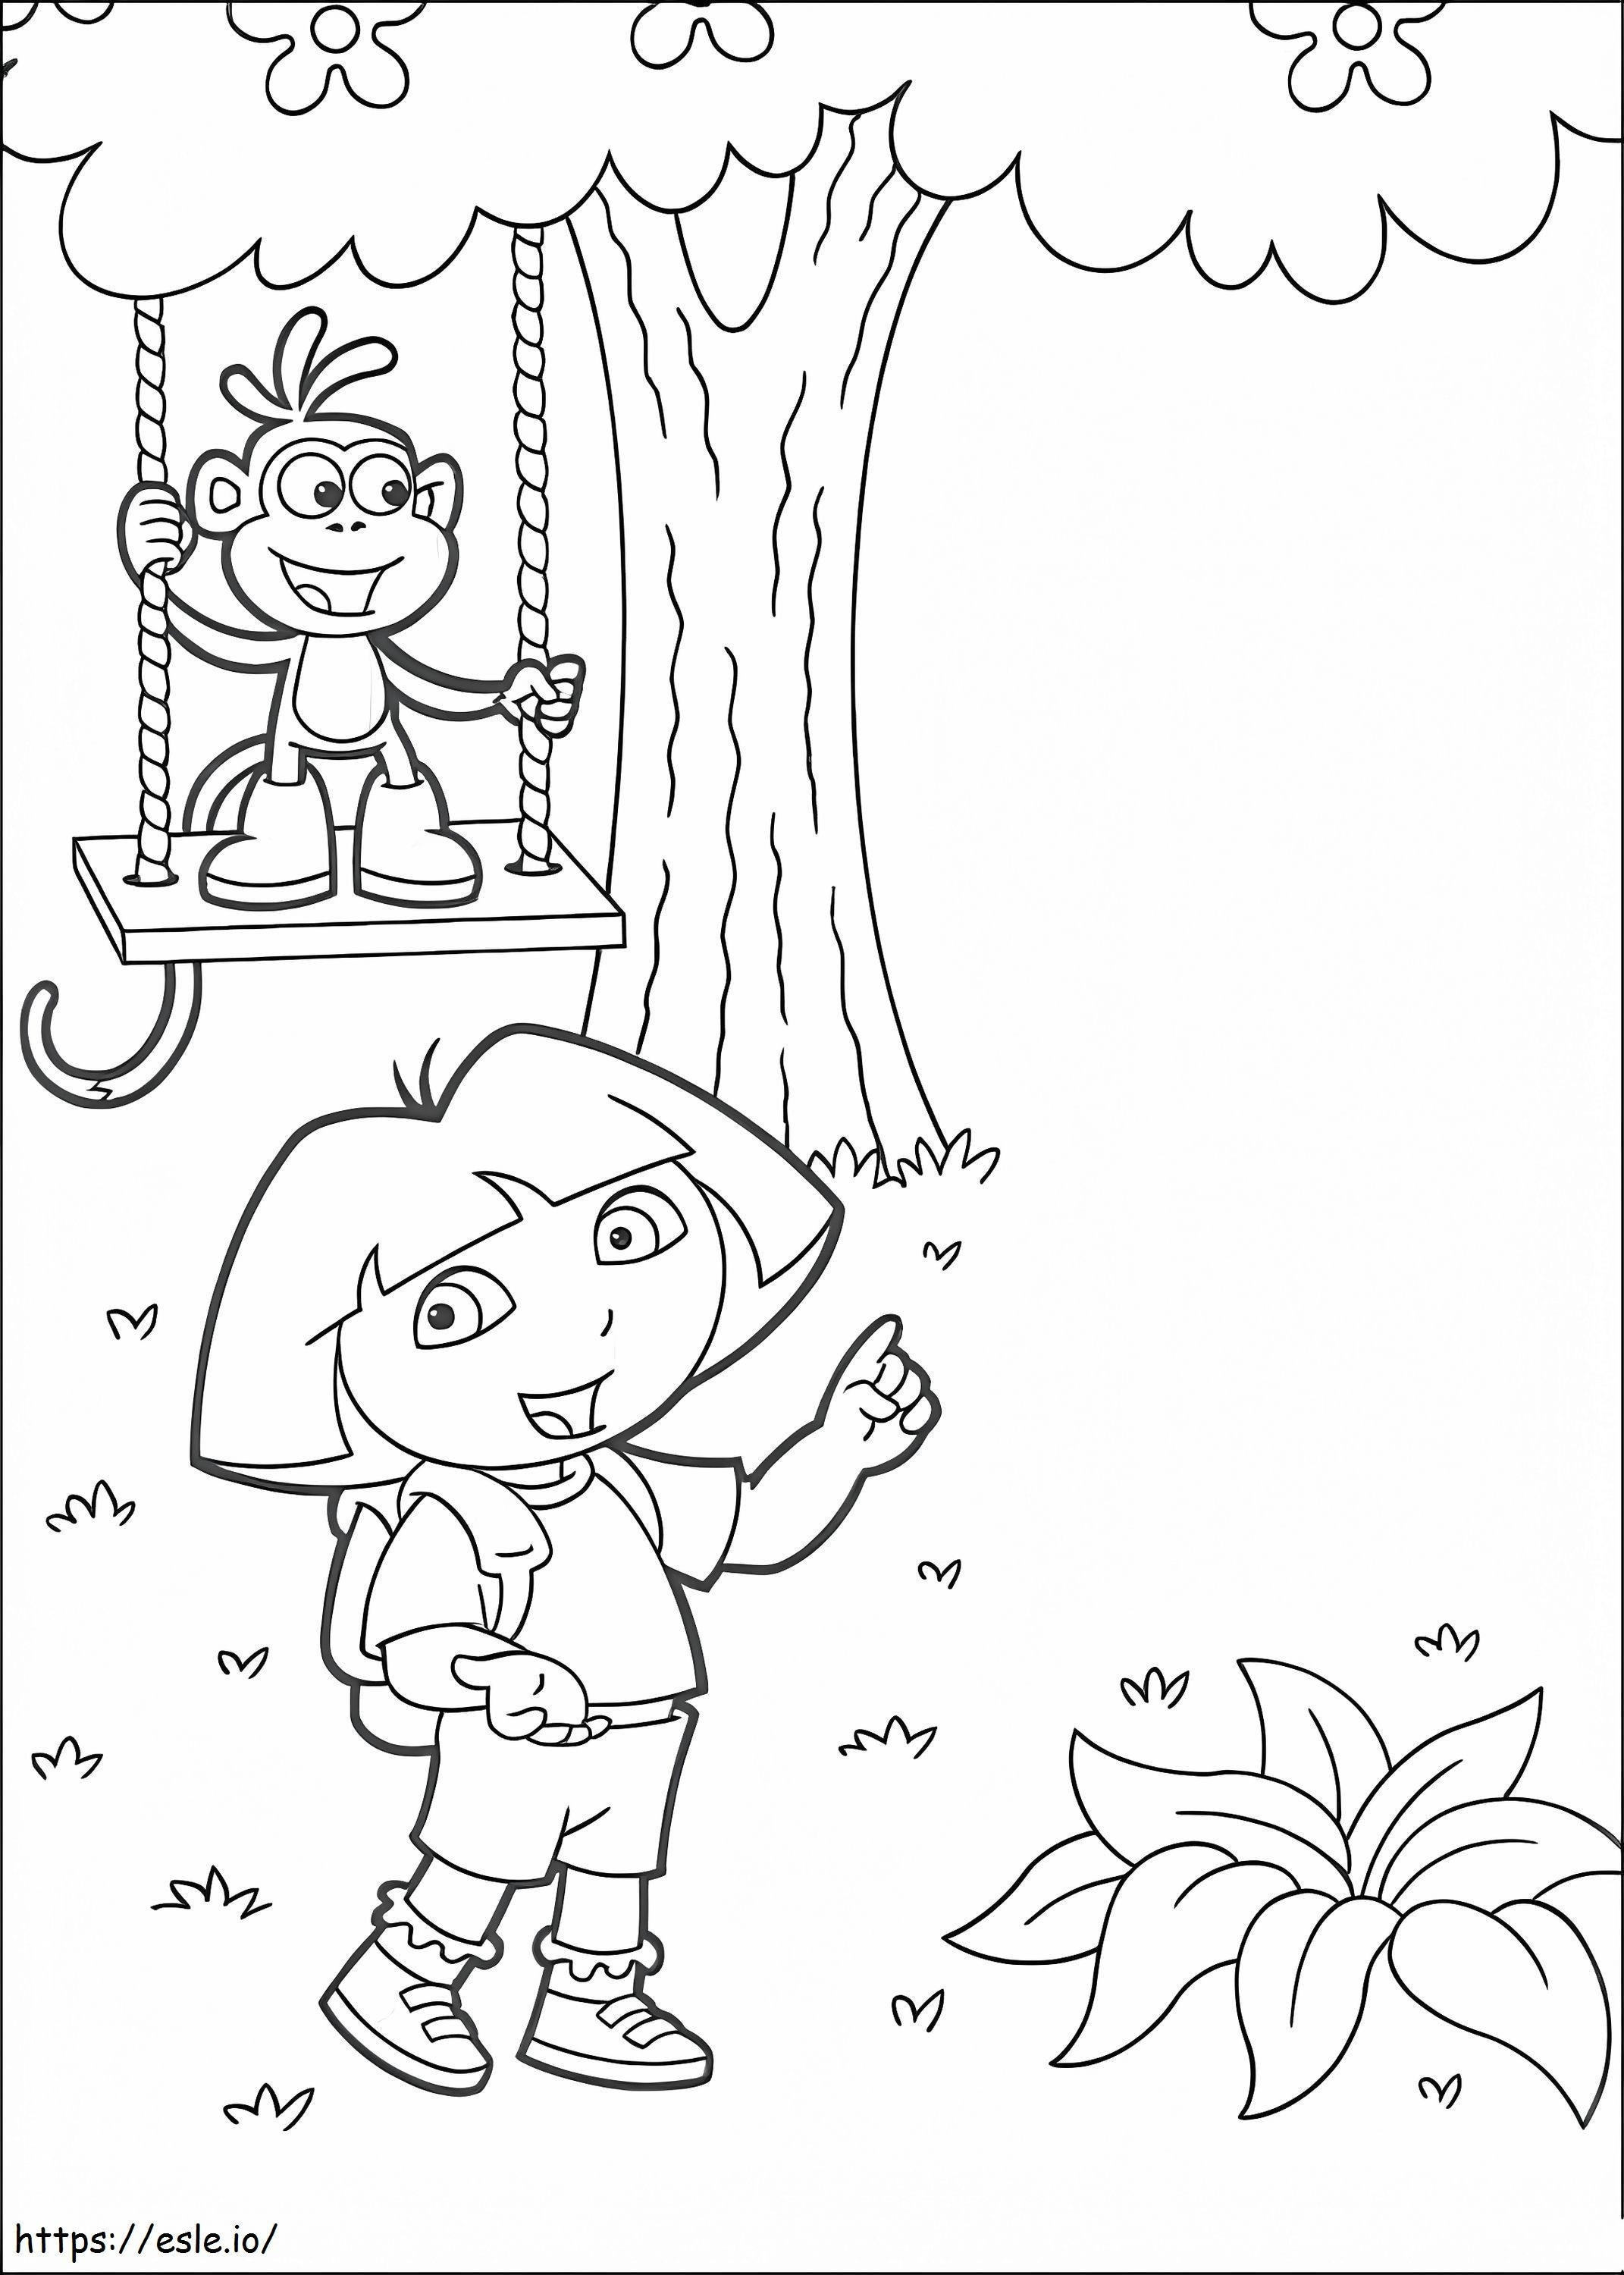 Dora und Stiefel spielen ausmalbilder